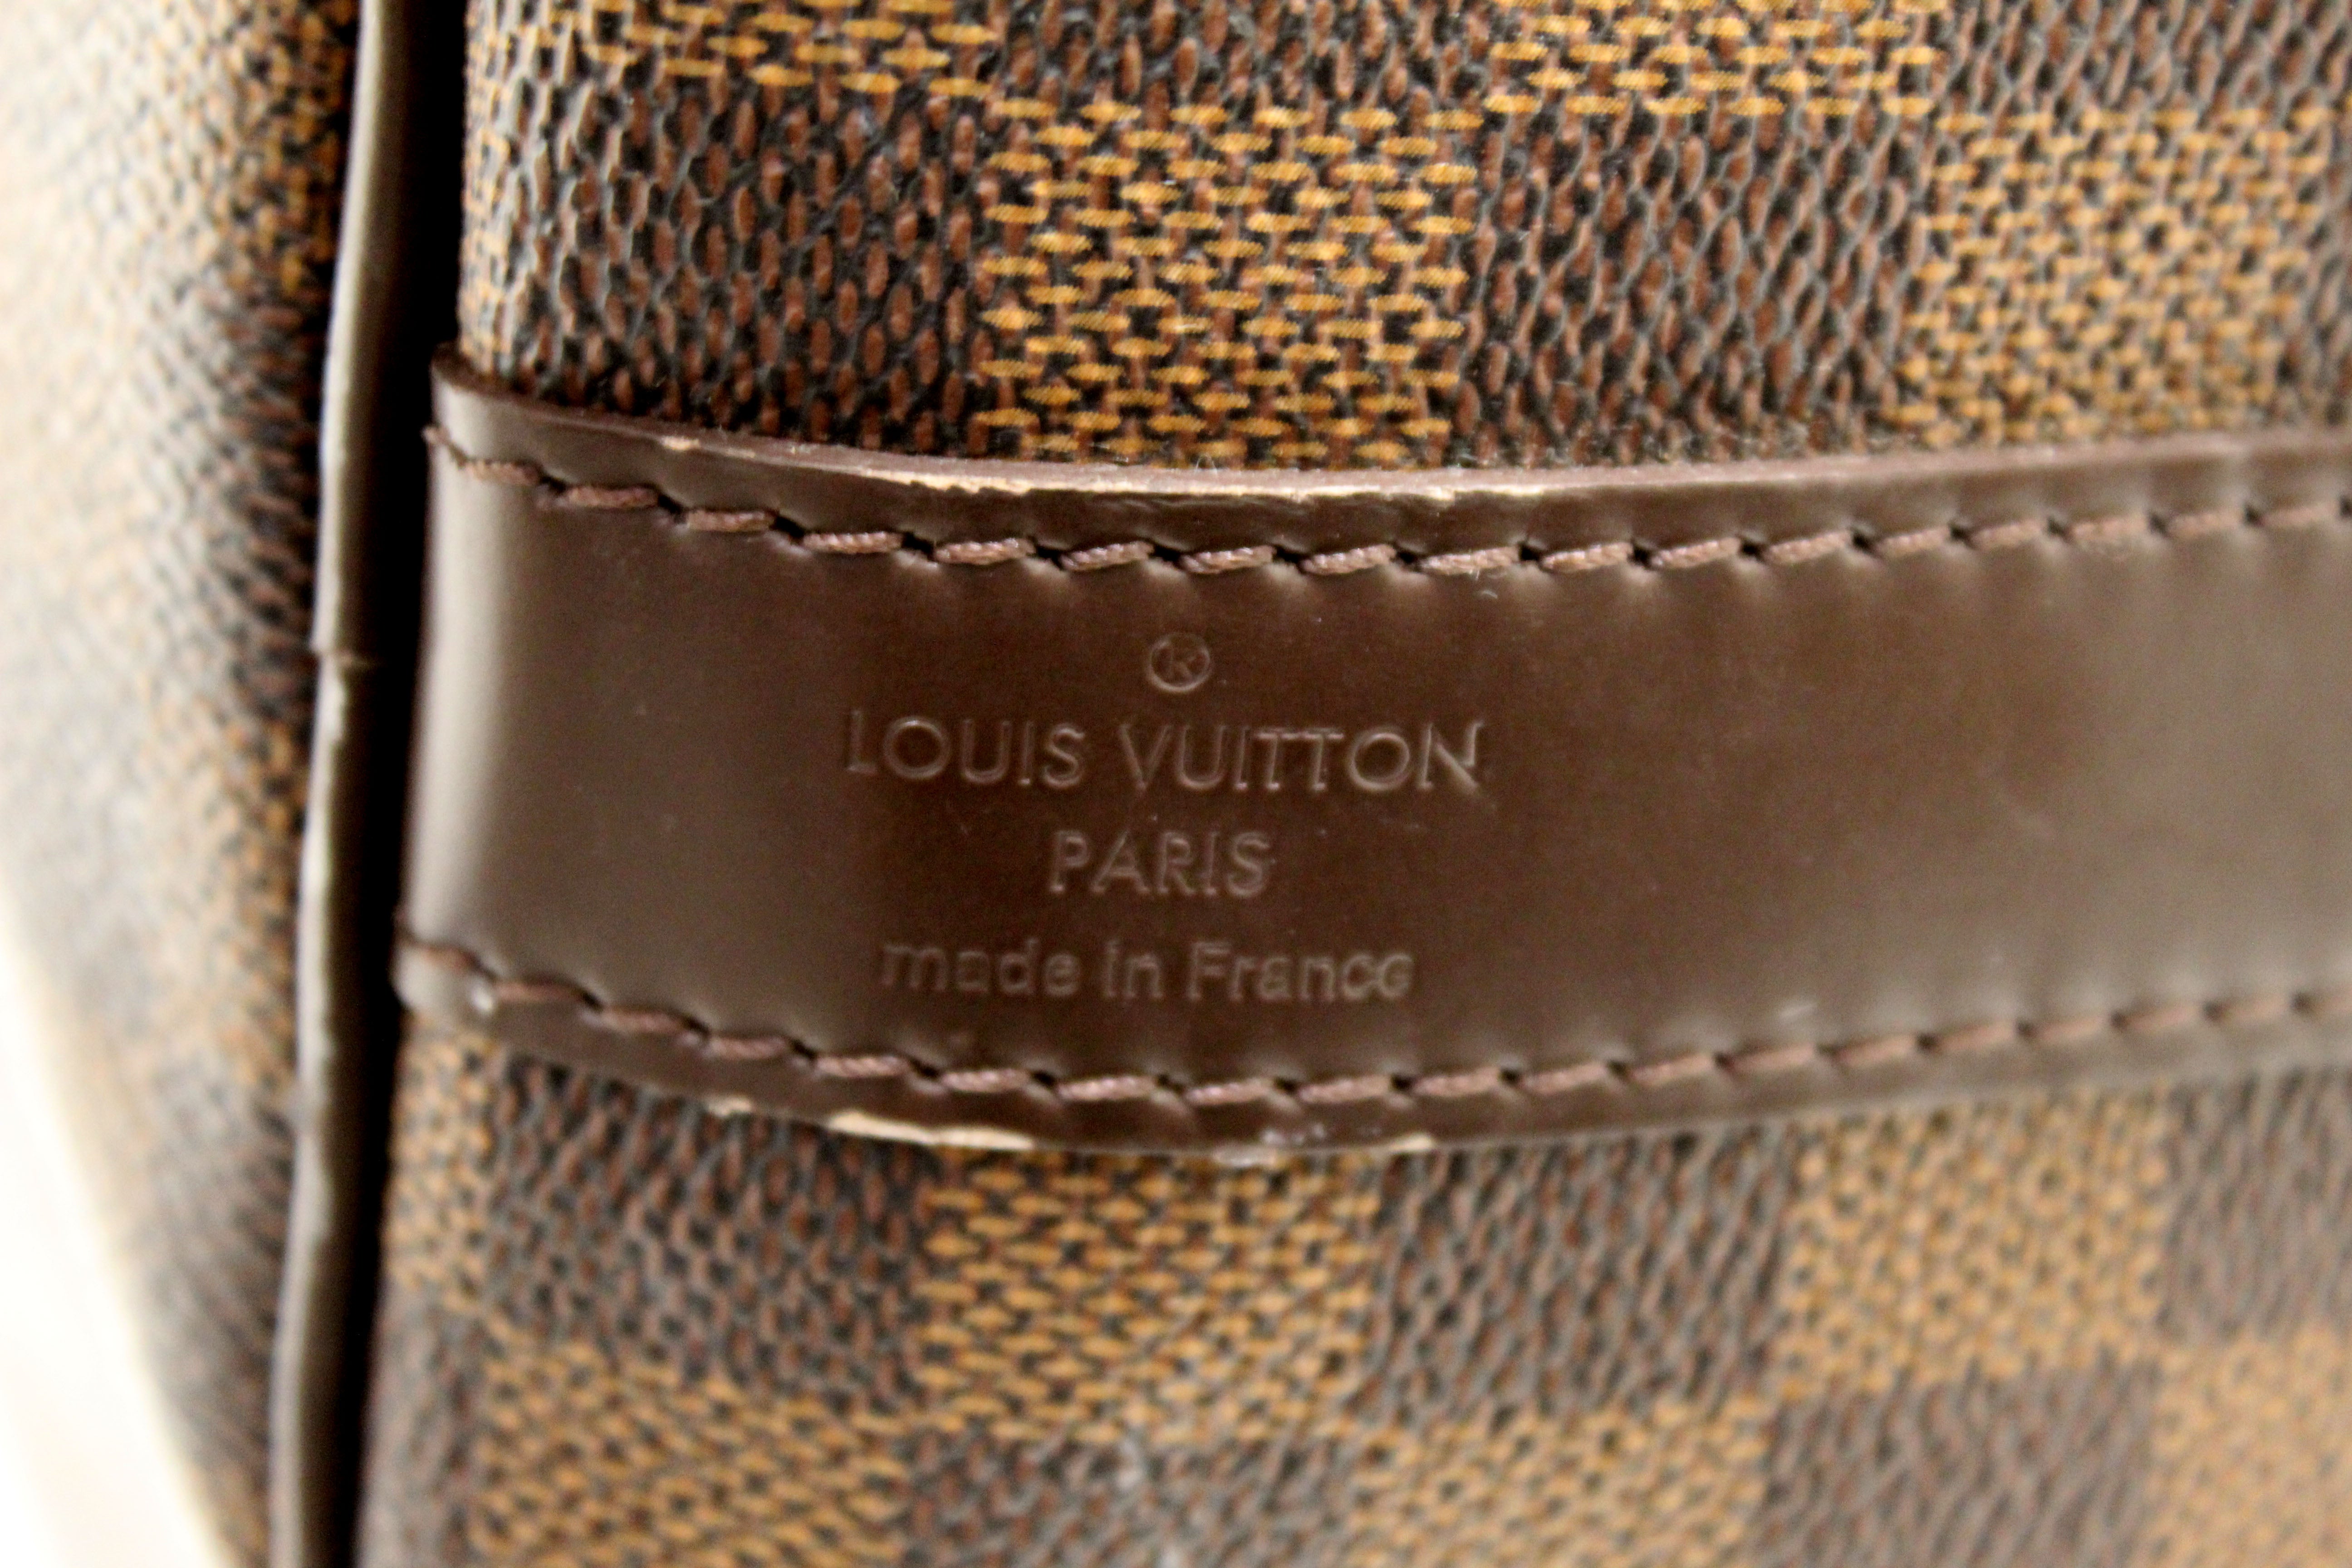 Authentic Louis Vuitton Damier Ebene Keepall Bandouliere 45 Travel Bag –  Paris Station Shop